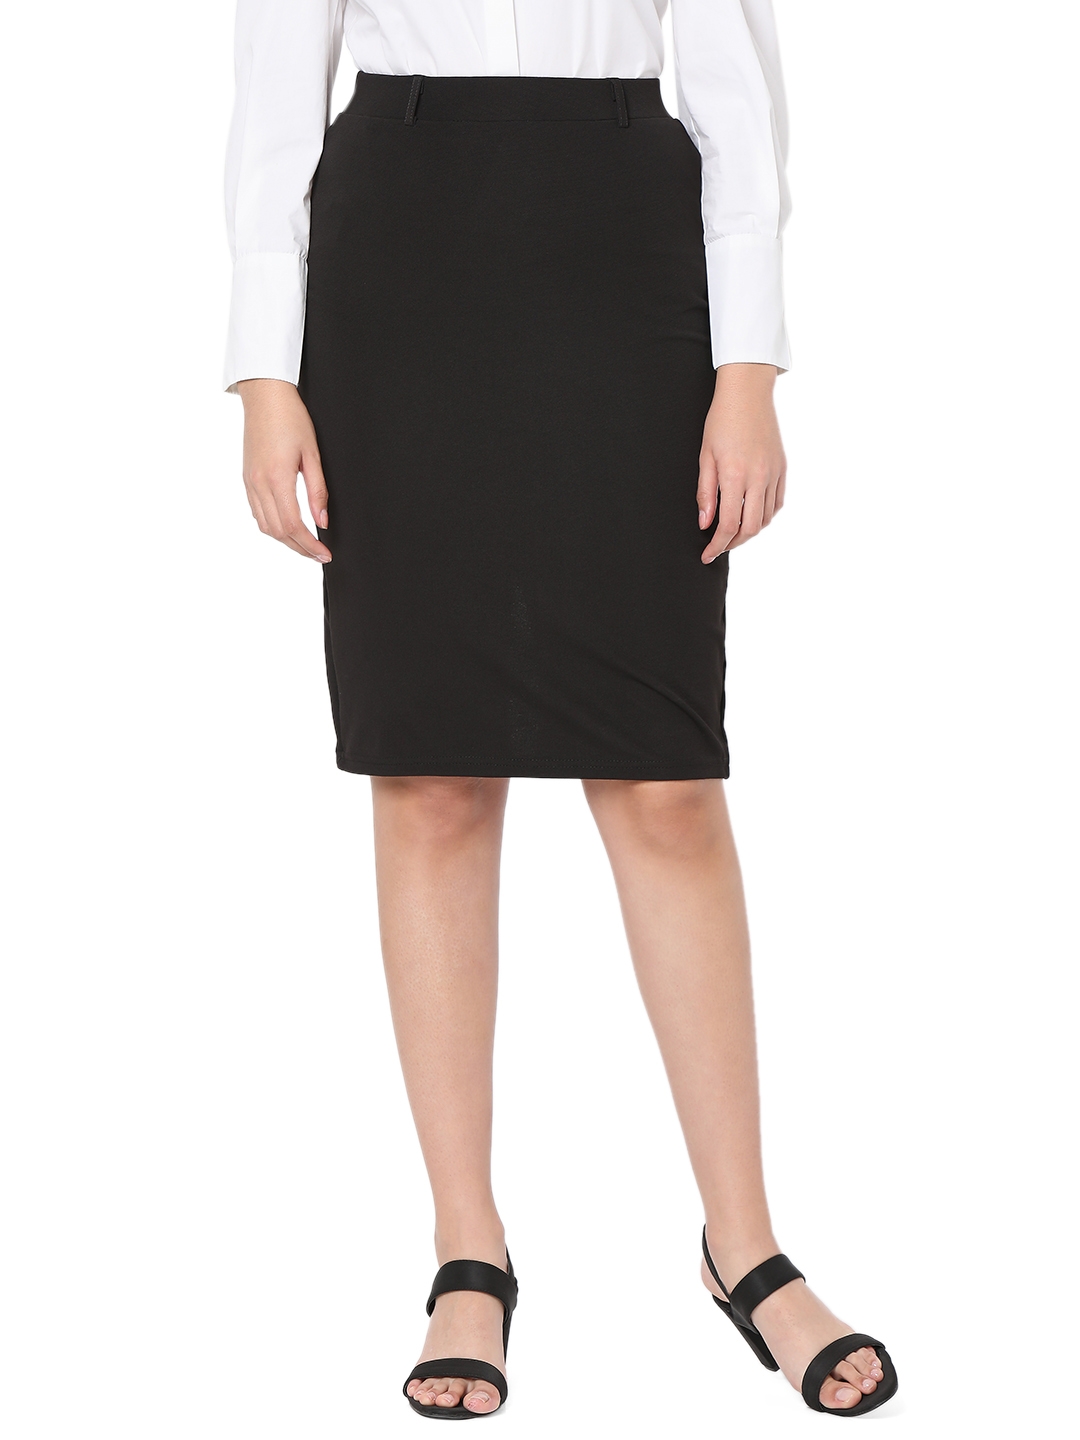 Smarty Pants | Smarty Pants women's cotton lycra black color pencil skirt.